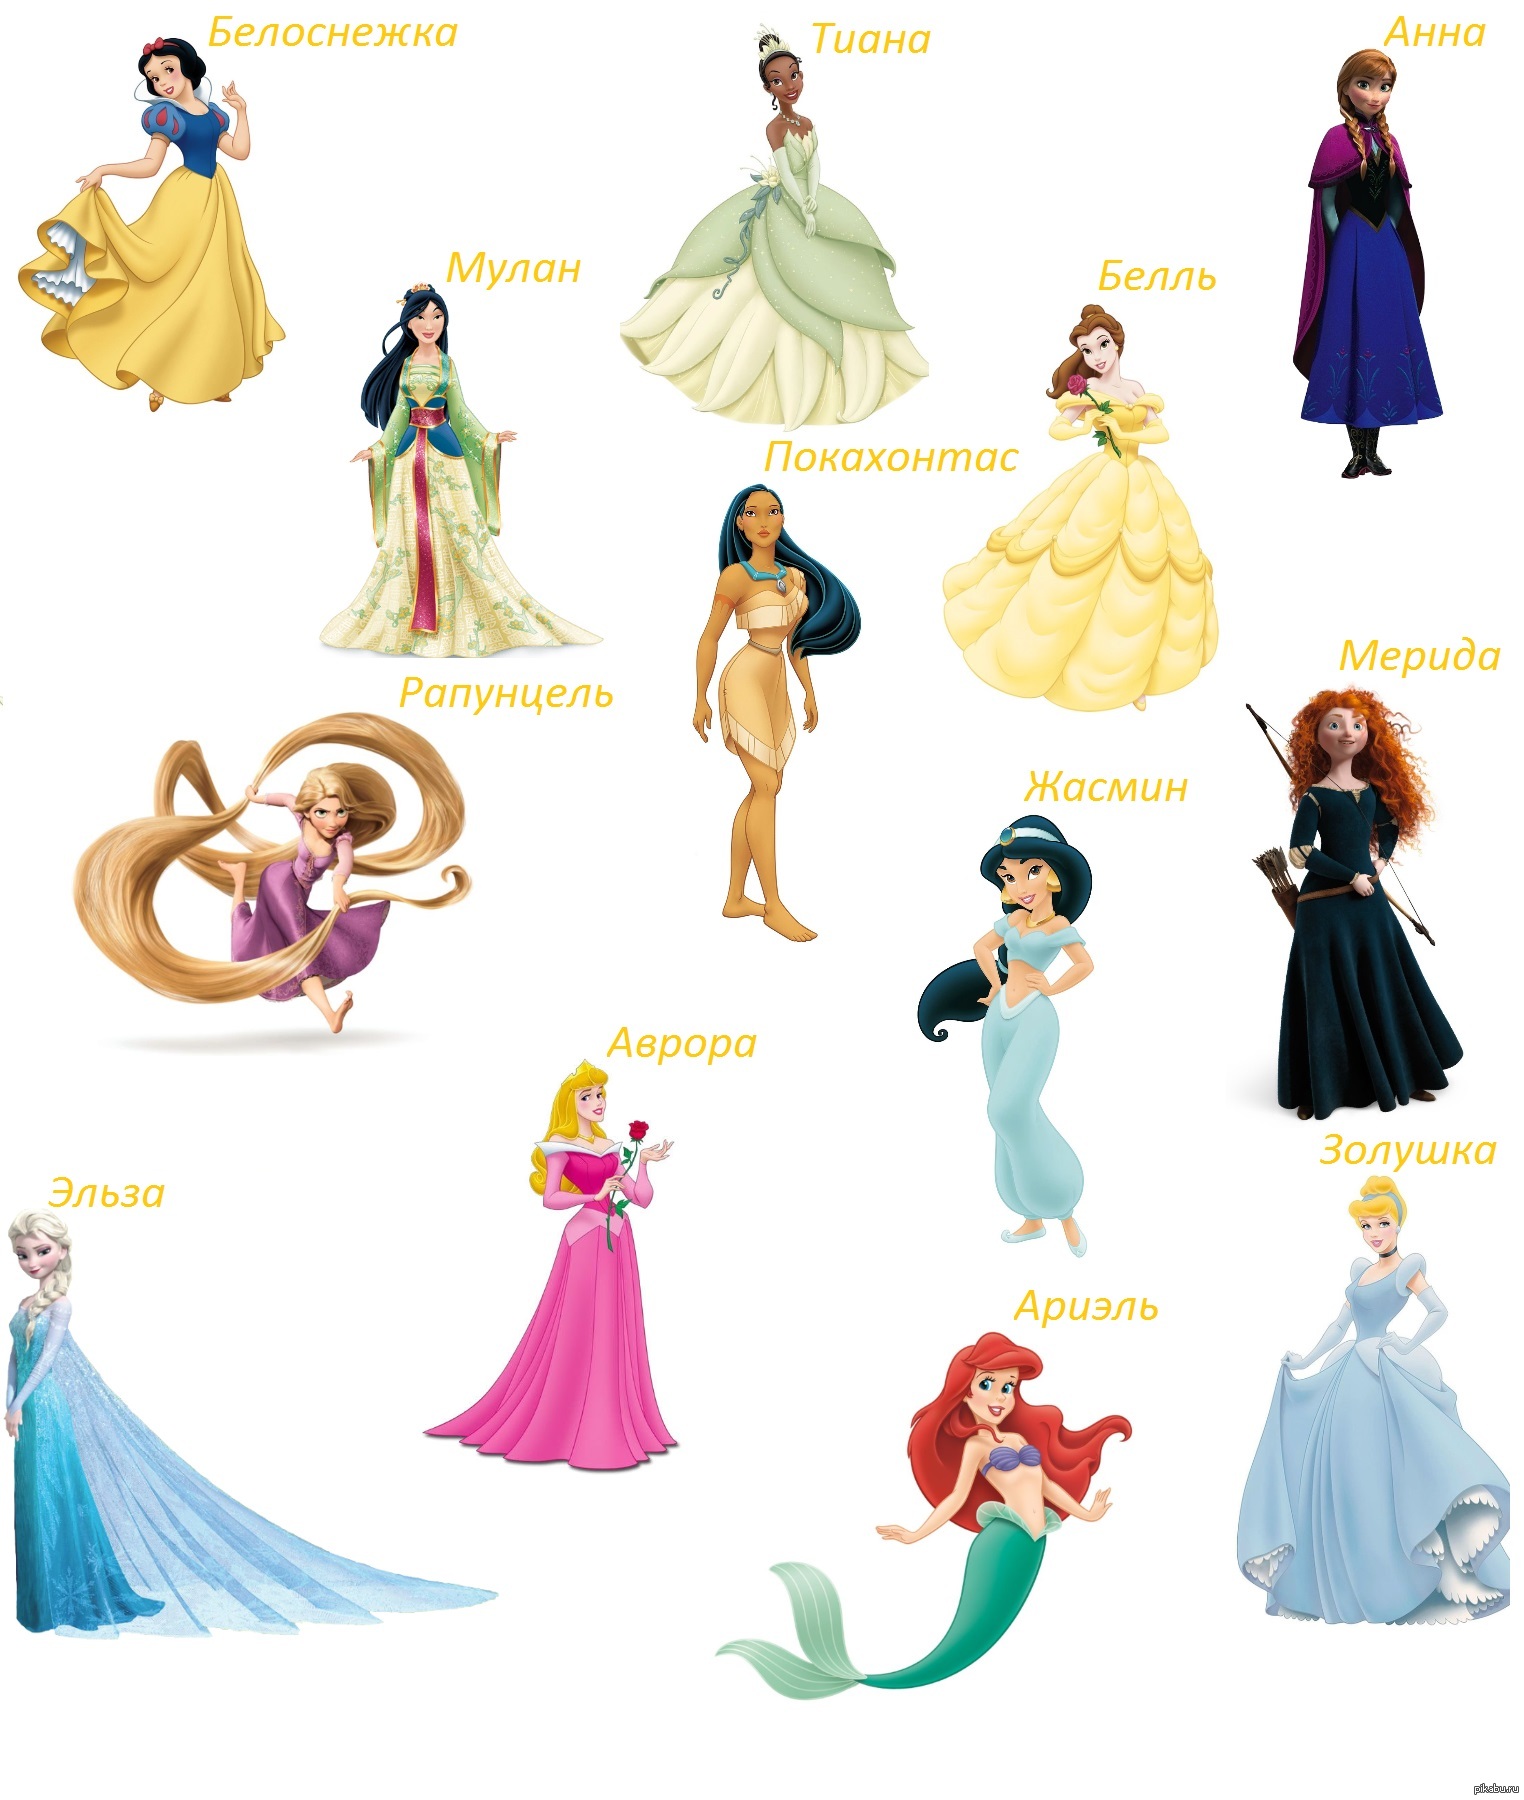 Список принцесс. Как зовут принцесс Диснея. Принцессы Disney и их имена. Принцессы Дисней по именам список. Принцессы Диснея с именами на русском.